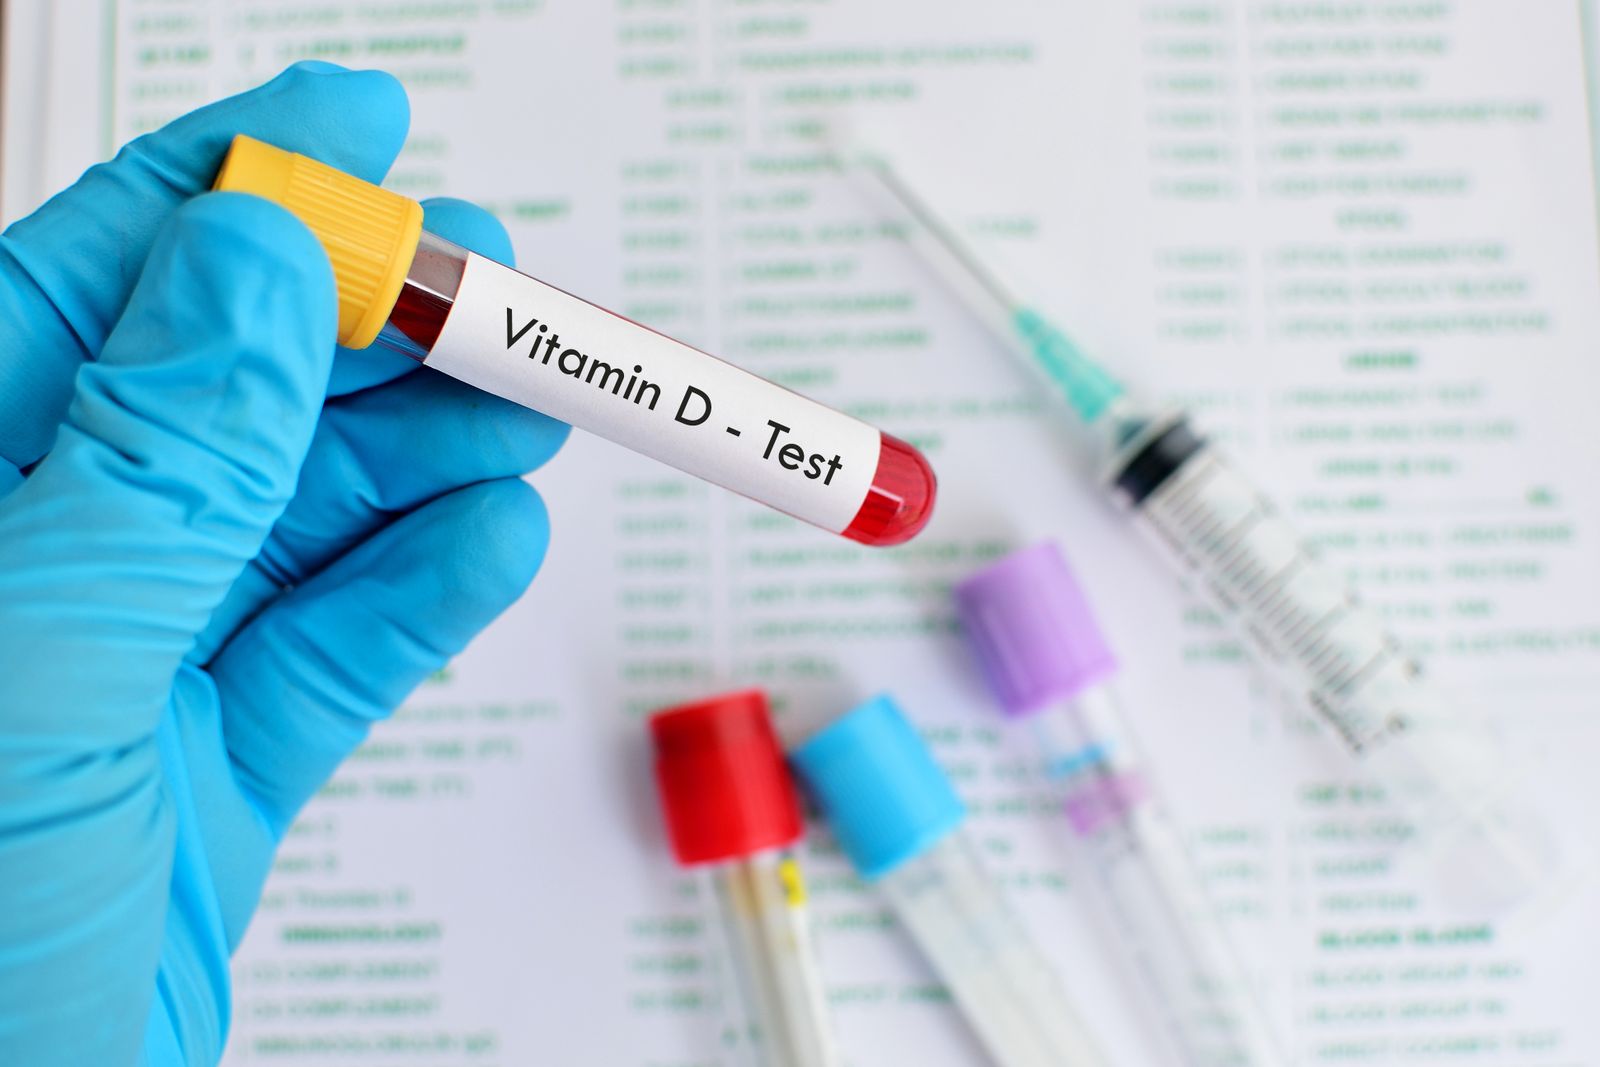 Vitamin-D-Spiegel wird mittels Blutentnahme überprüft